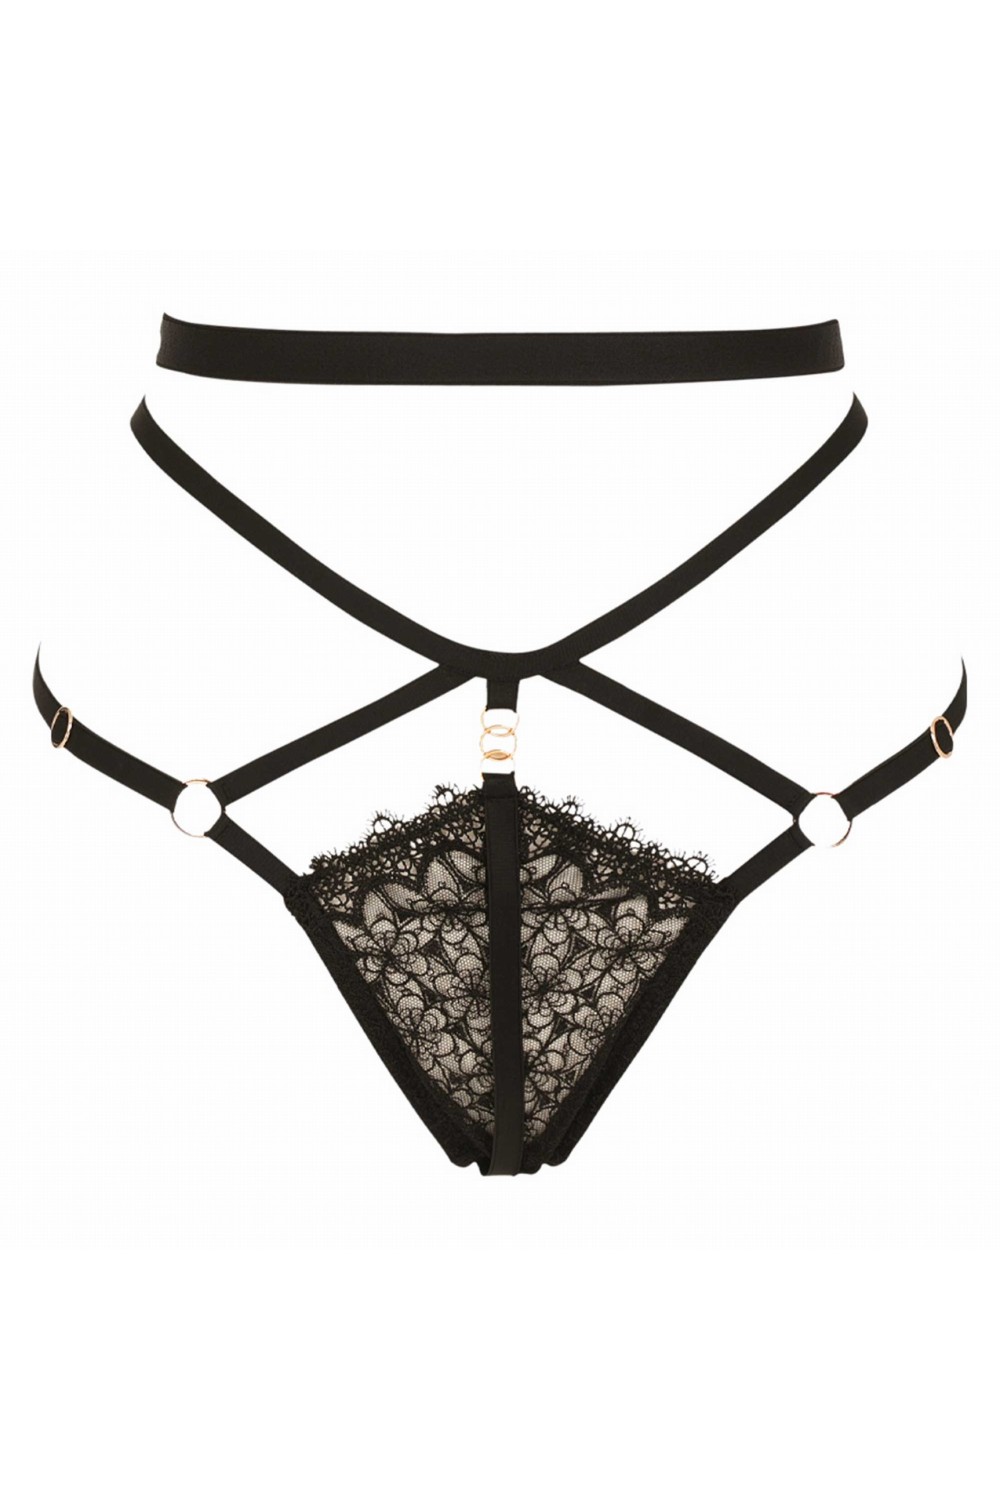 Bijou black thong - Luxury lingerie – Impudique Official Website